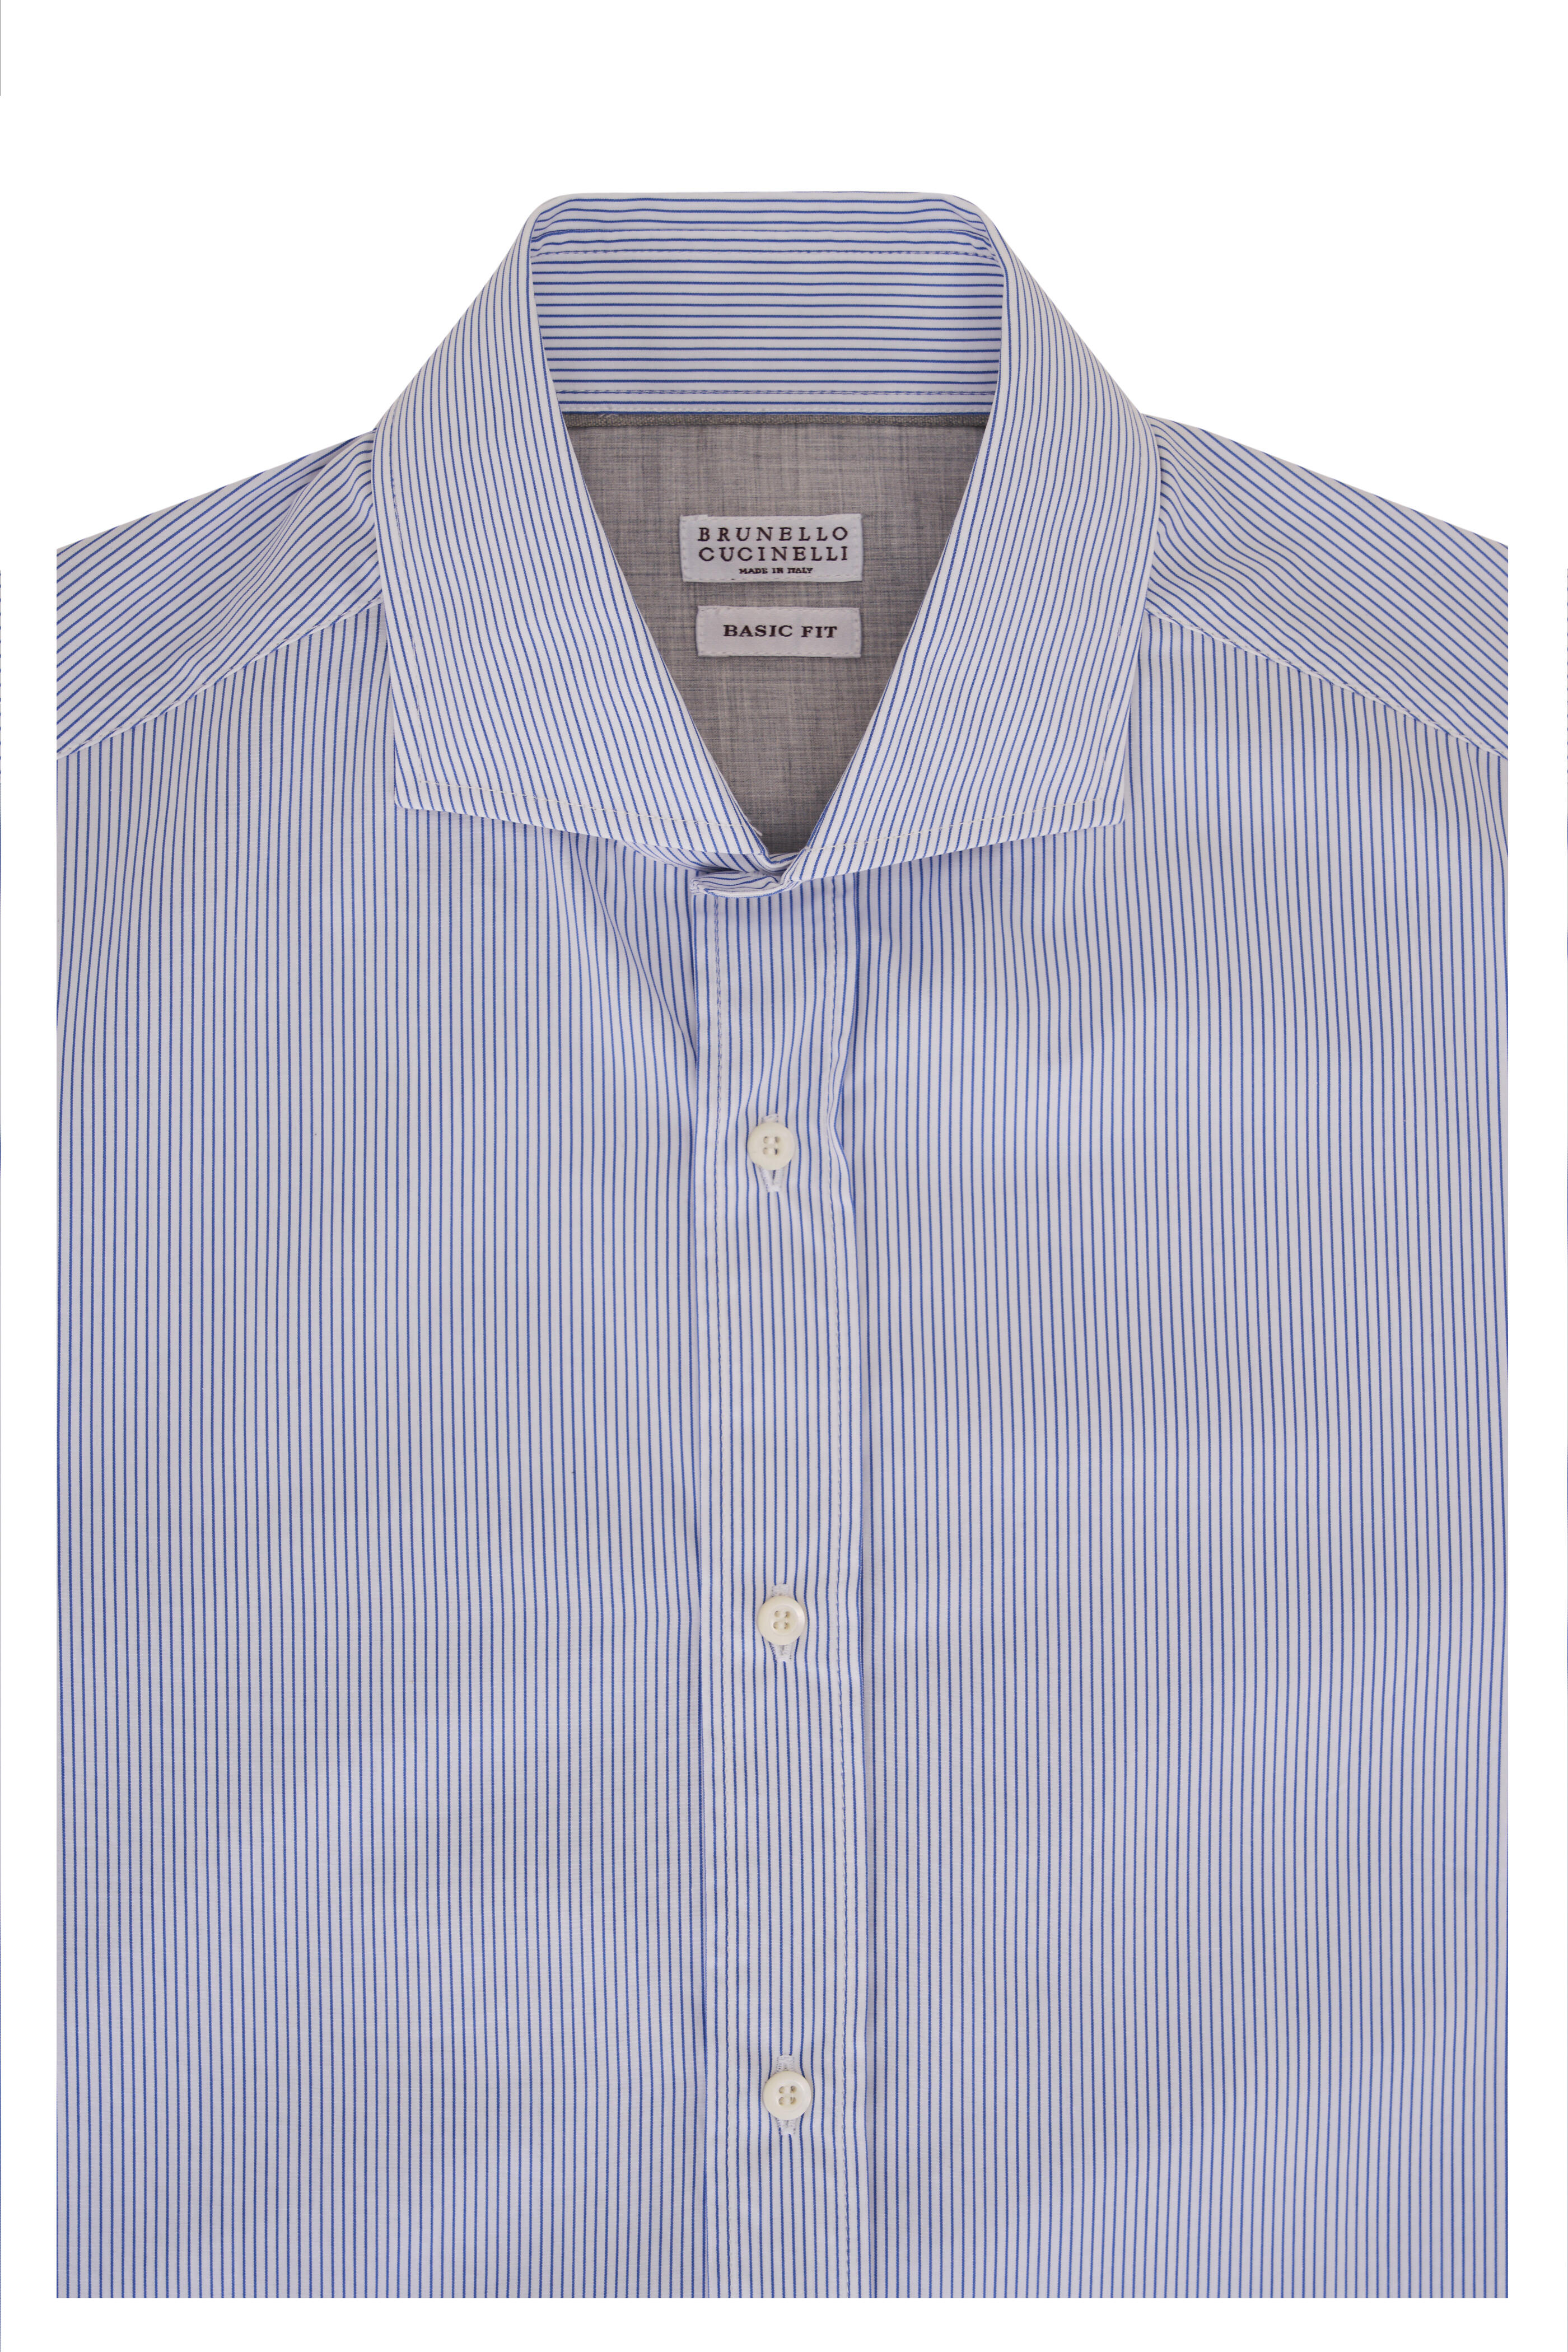 Brunello Cucinelli spread-collar cotton shirt - Brown